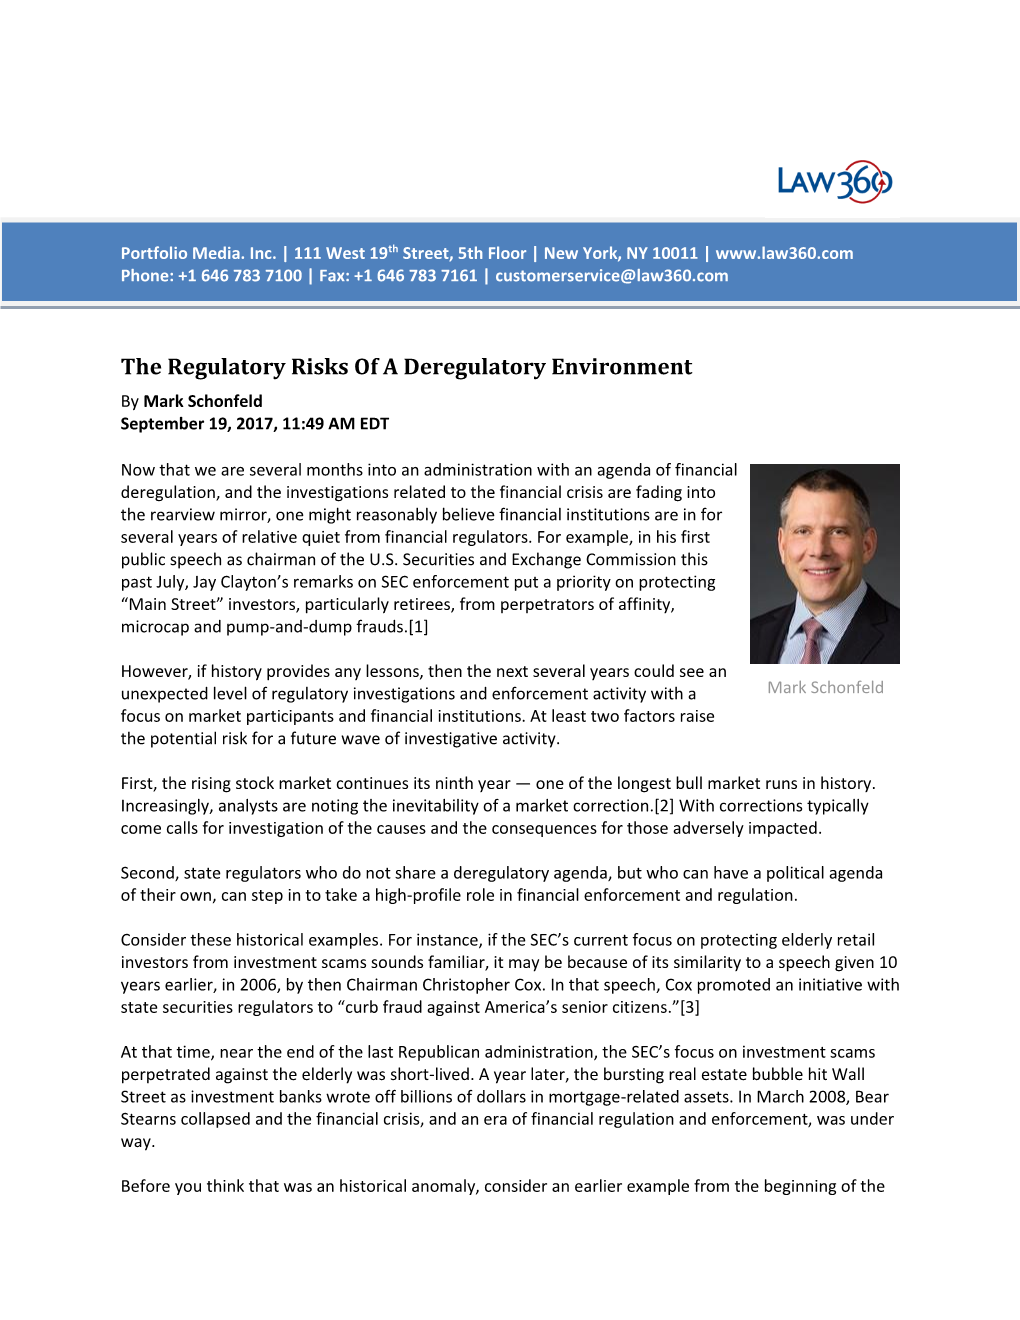 The Regulatory Risks of a Deregulatory Environment by Mark Schonfeld September 19, 2017, 11:49 AM EDT